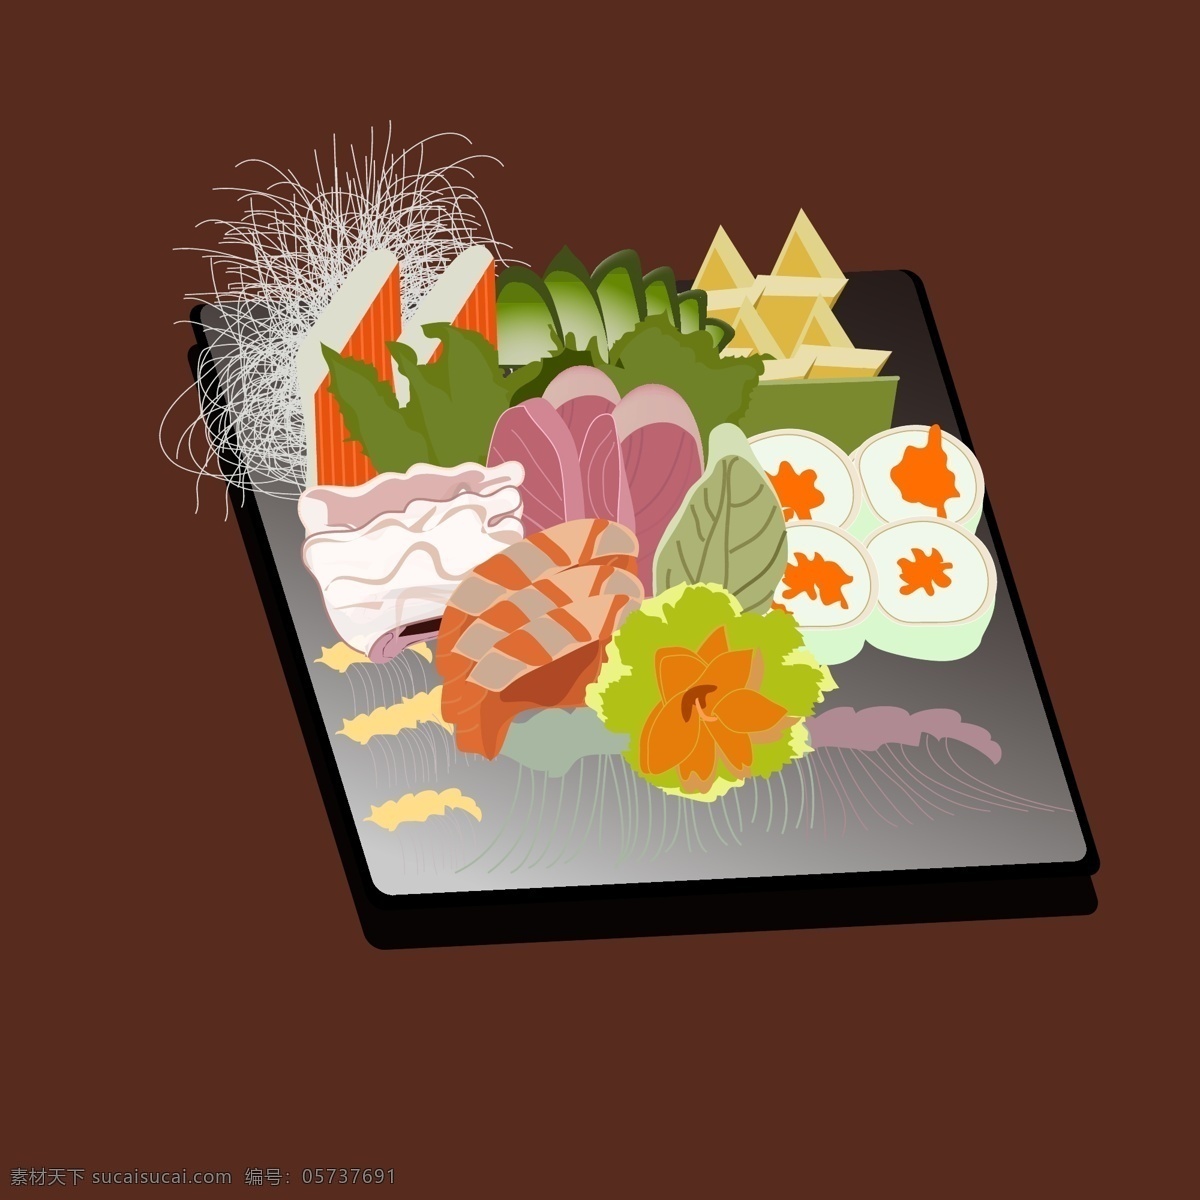 原创 插画 日本料理 美食 插图 矢量 寿司